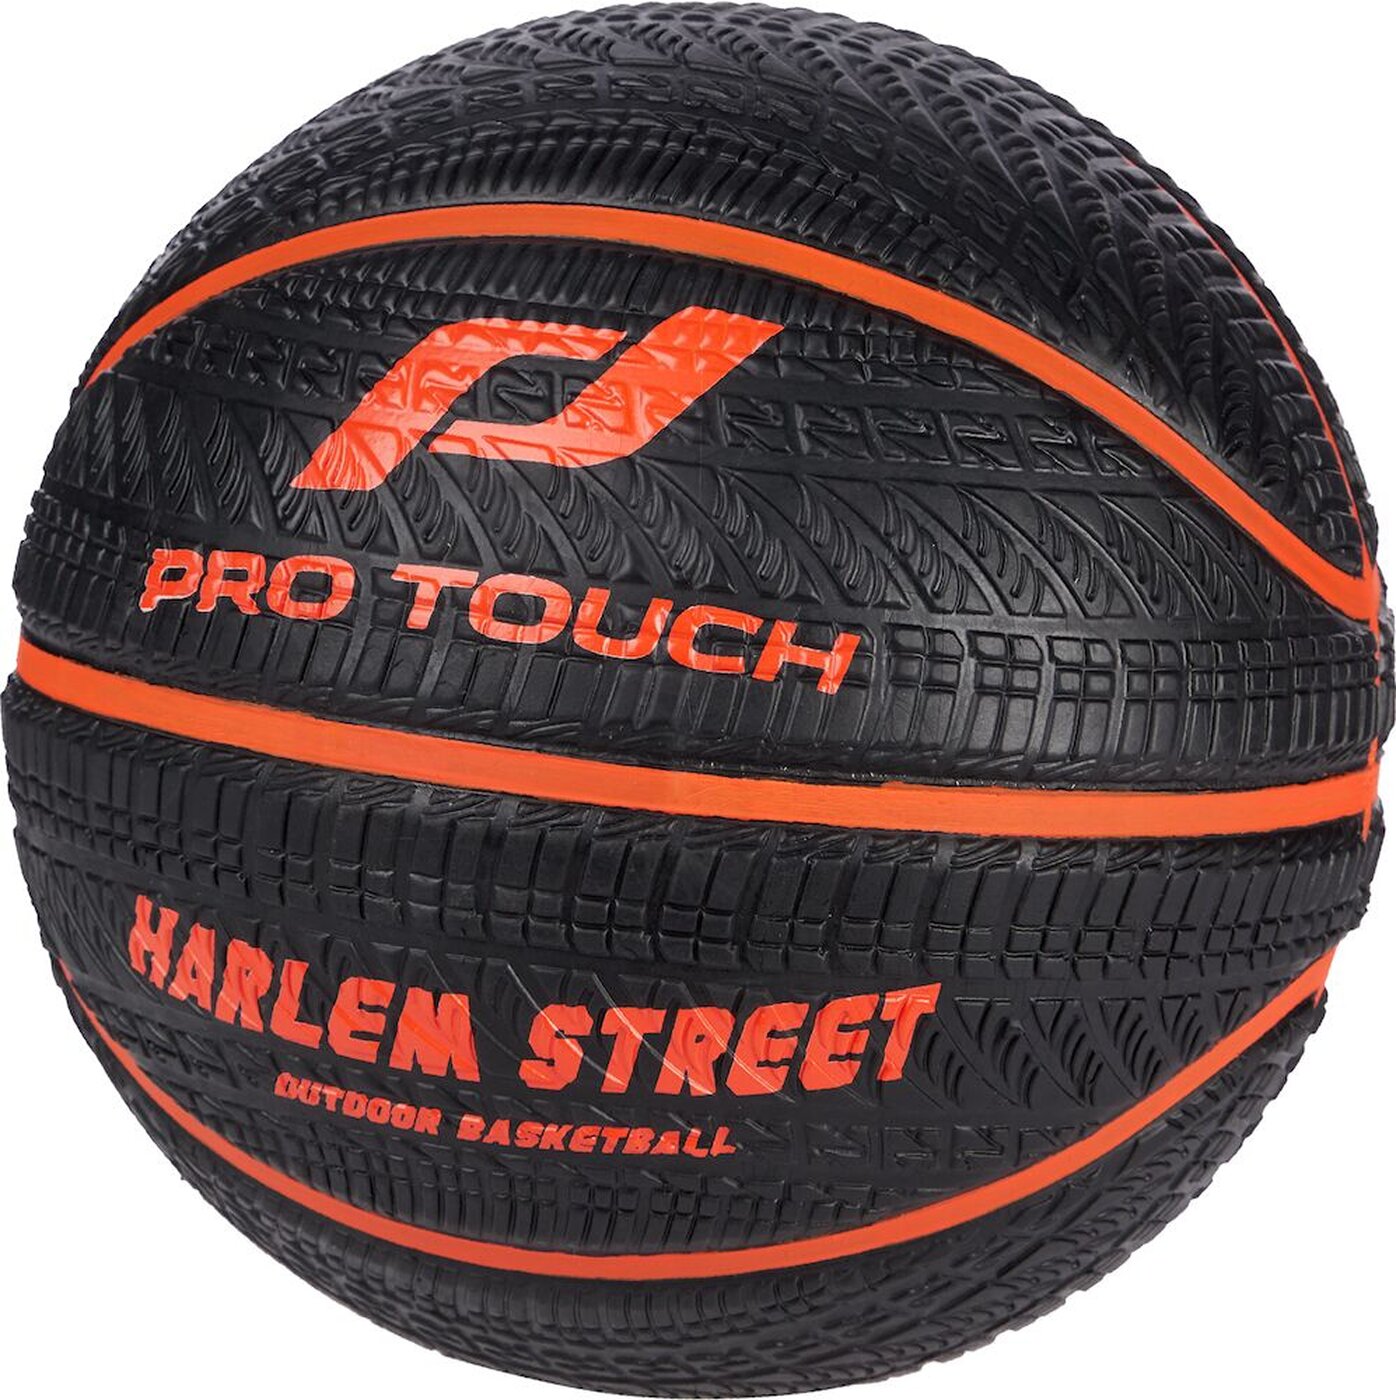 PRO TOUCH Basketball Harlem 300 Street online kaufen